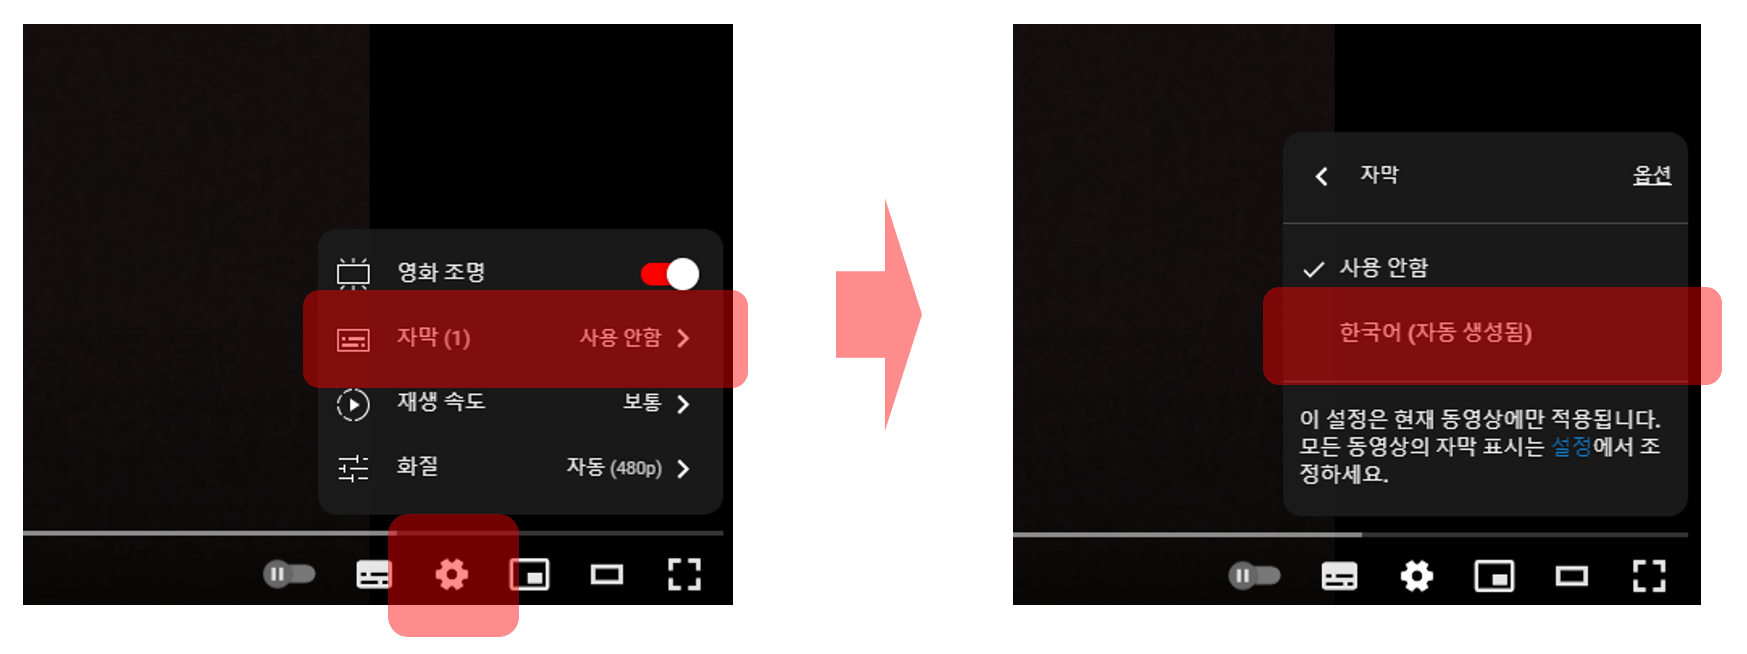 유튜브 자동 자막 설정